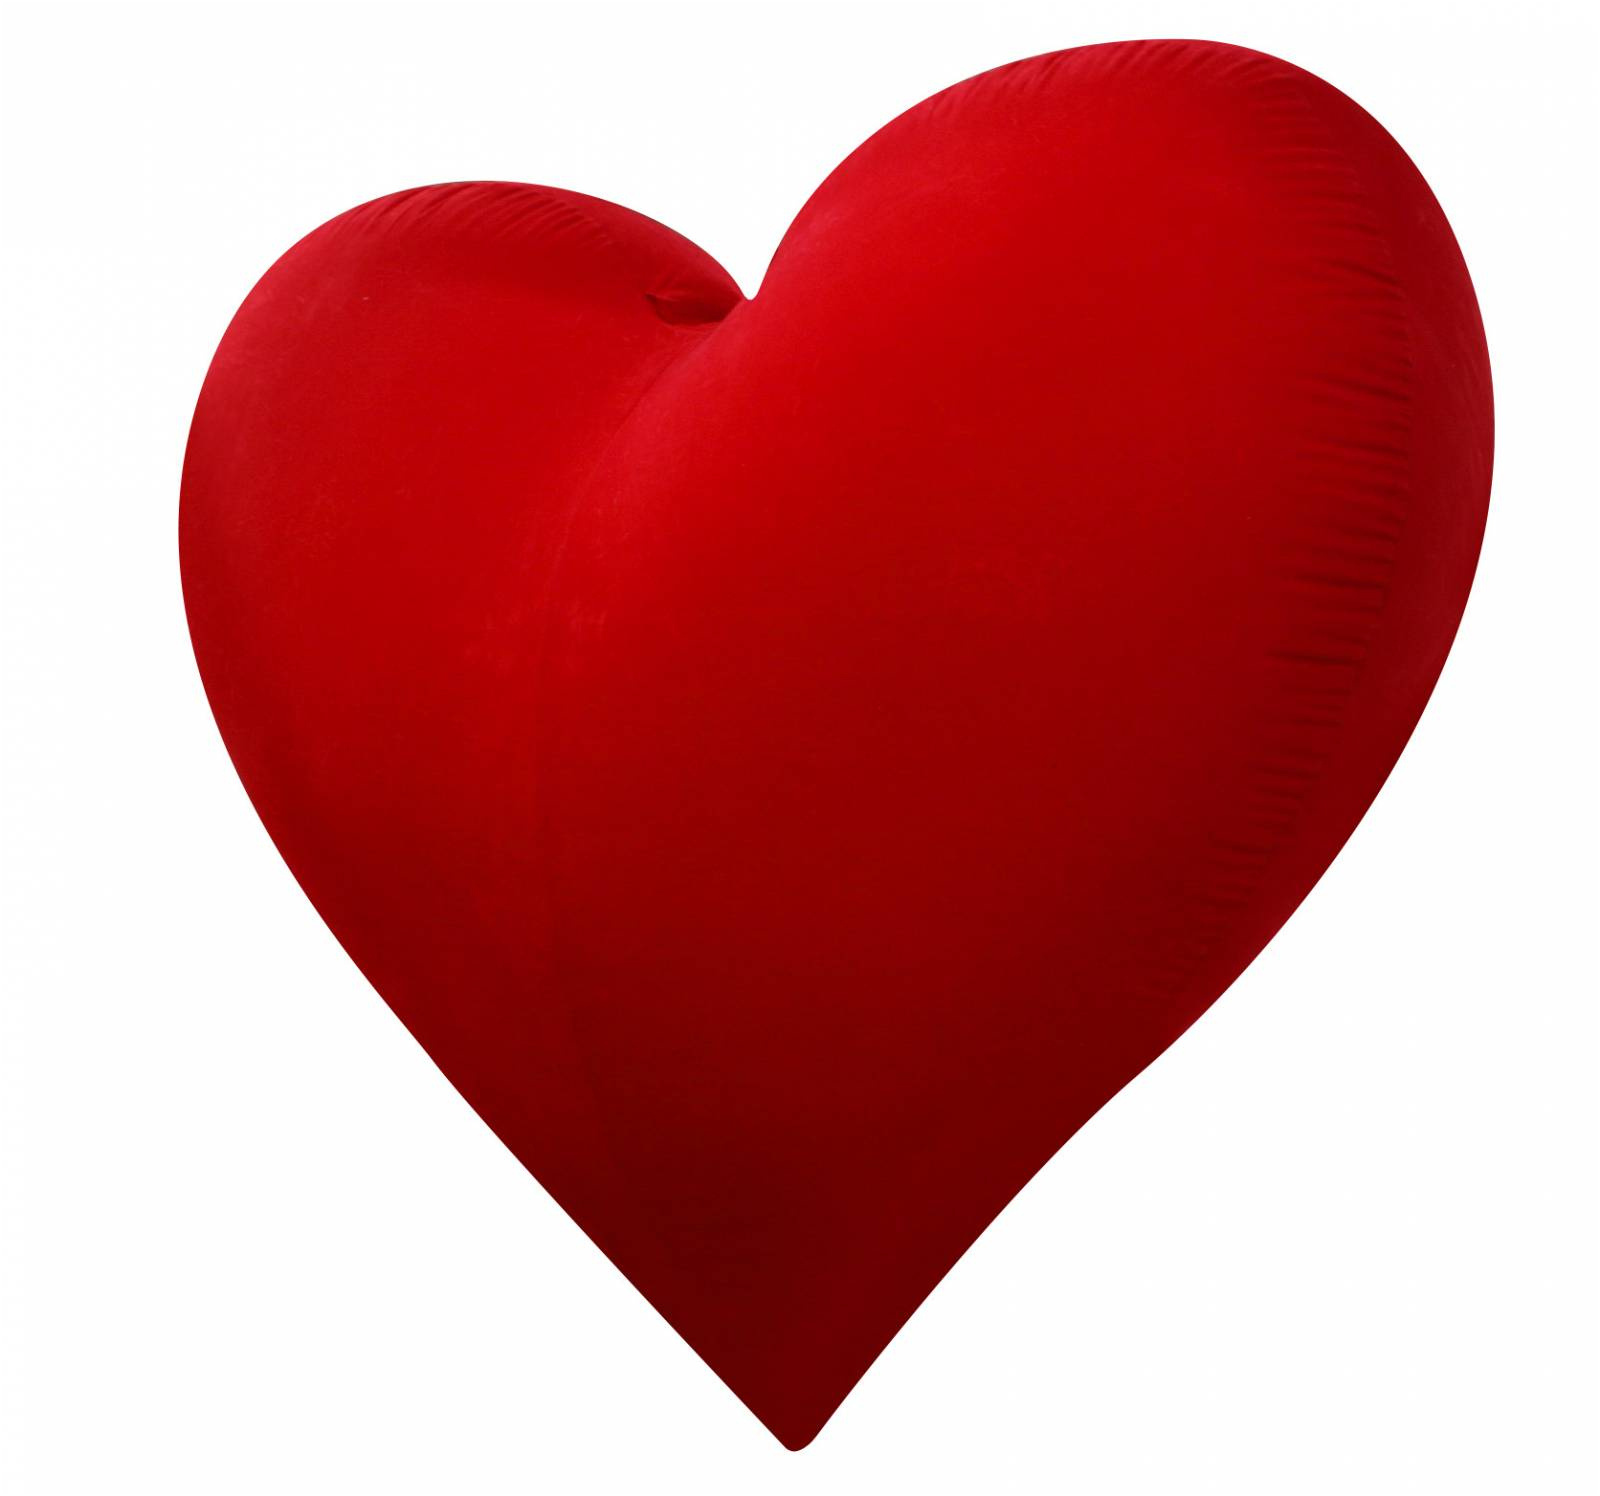 coeur damour geant giant heart 3d decorations de noel lyon concernant image de coeur d amour